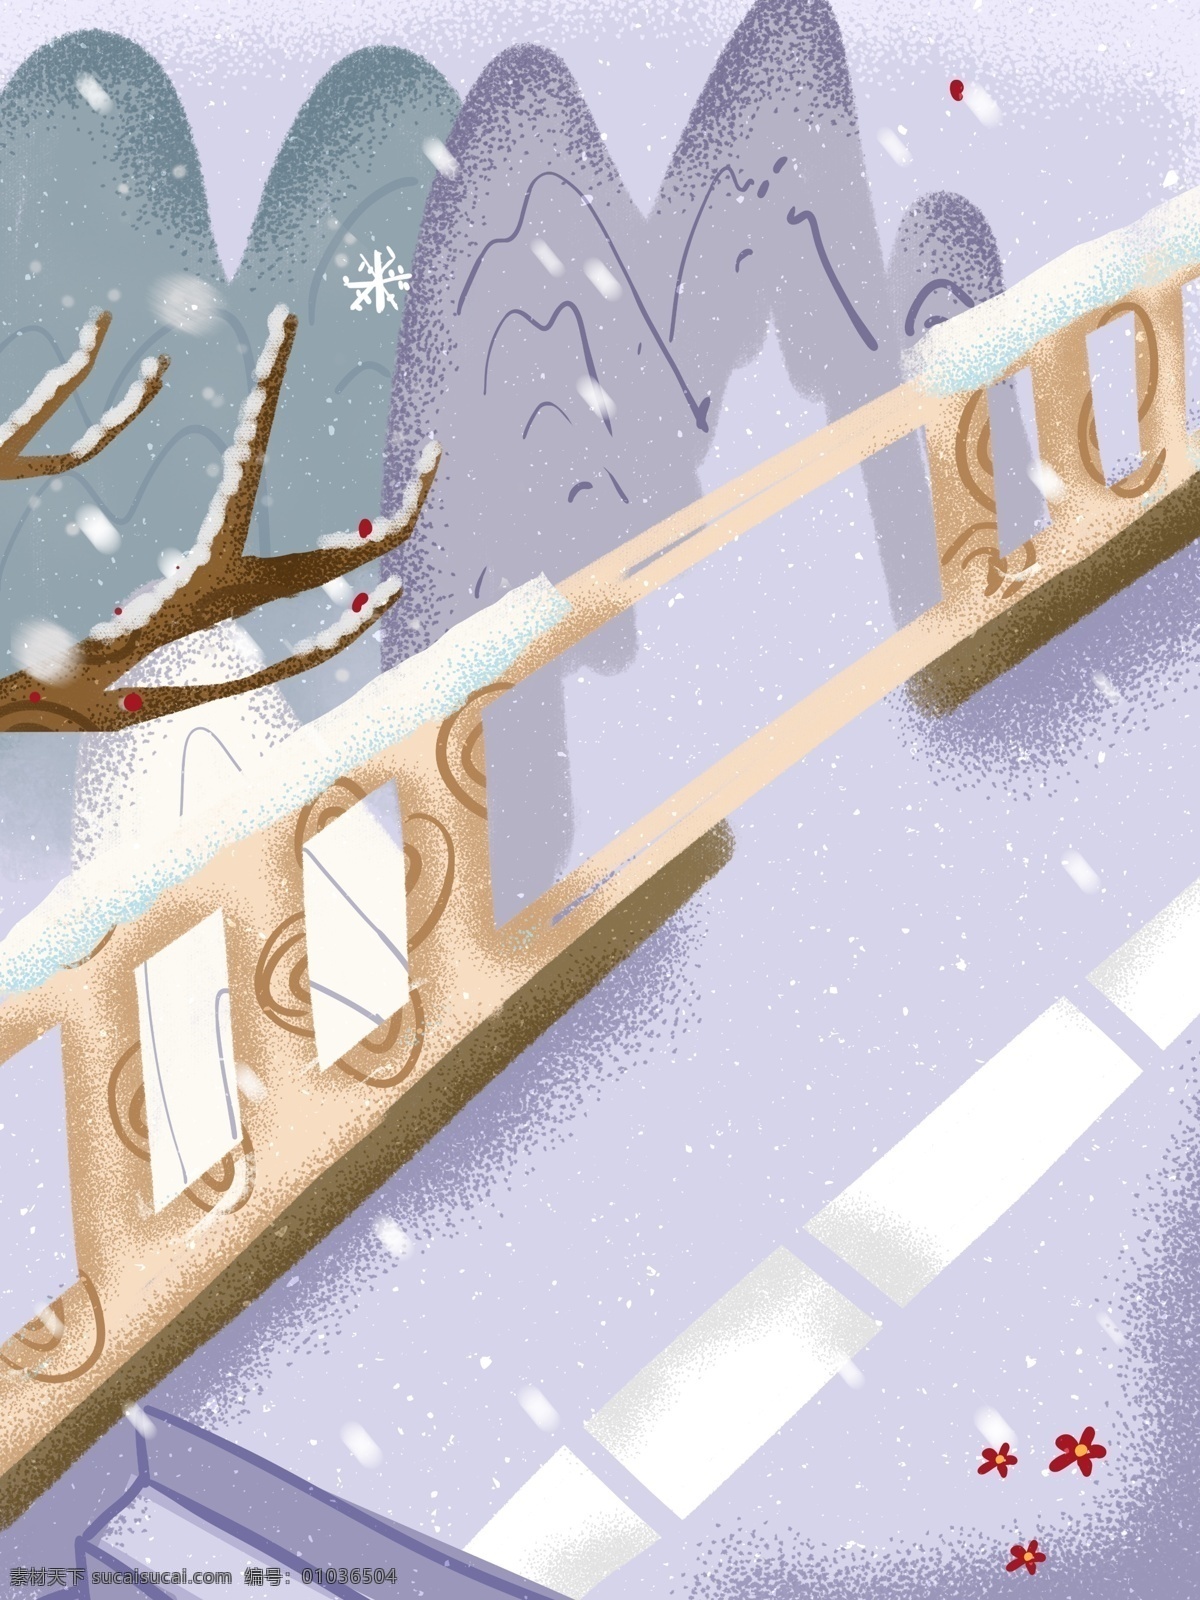 彩绘 唯美 冬季 背景 雪地 桥 手绘背景 背景图 清新 远山 下雪 广告背景 背景设计 背景展板 促销背景